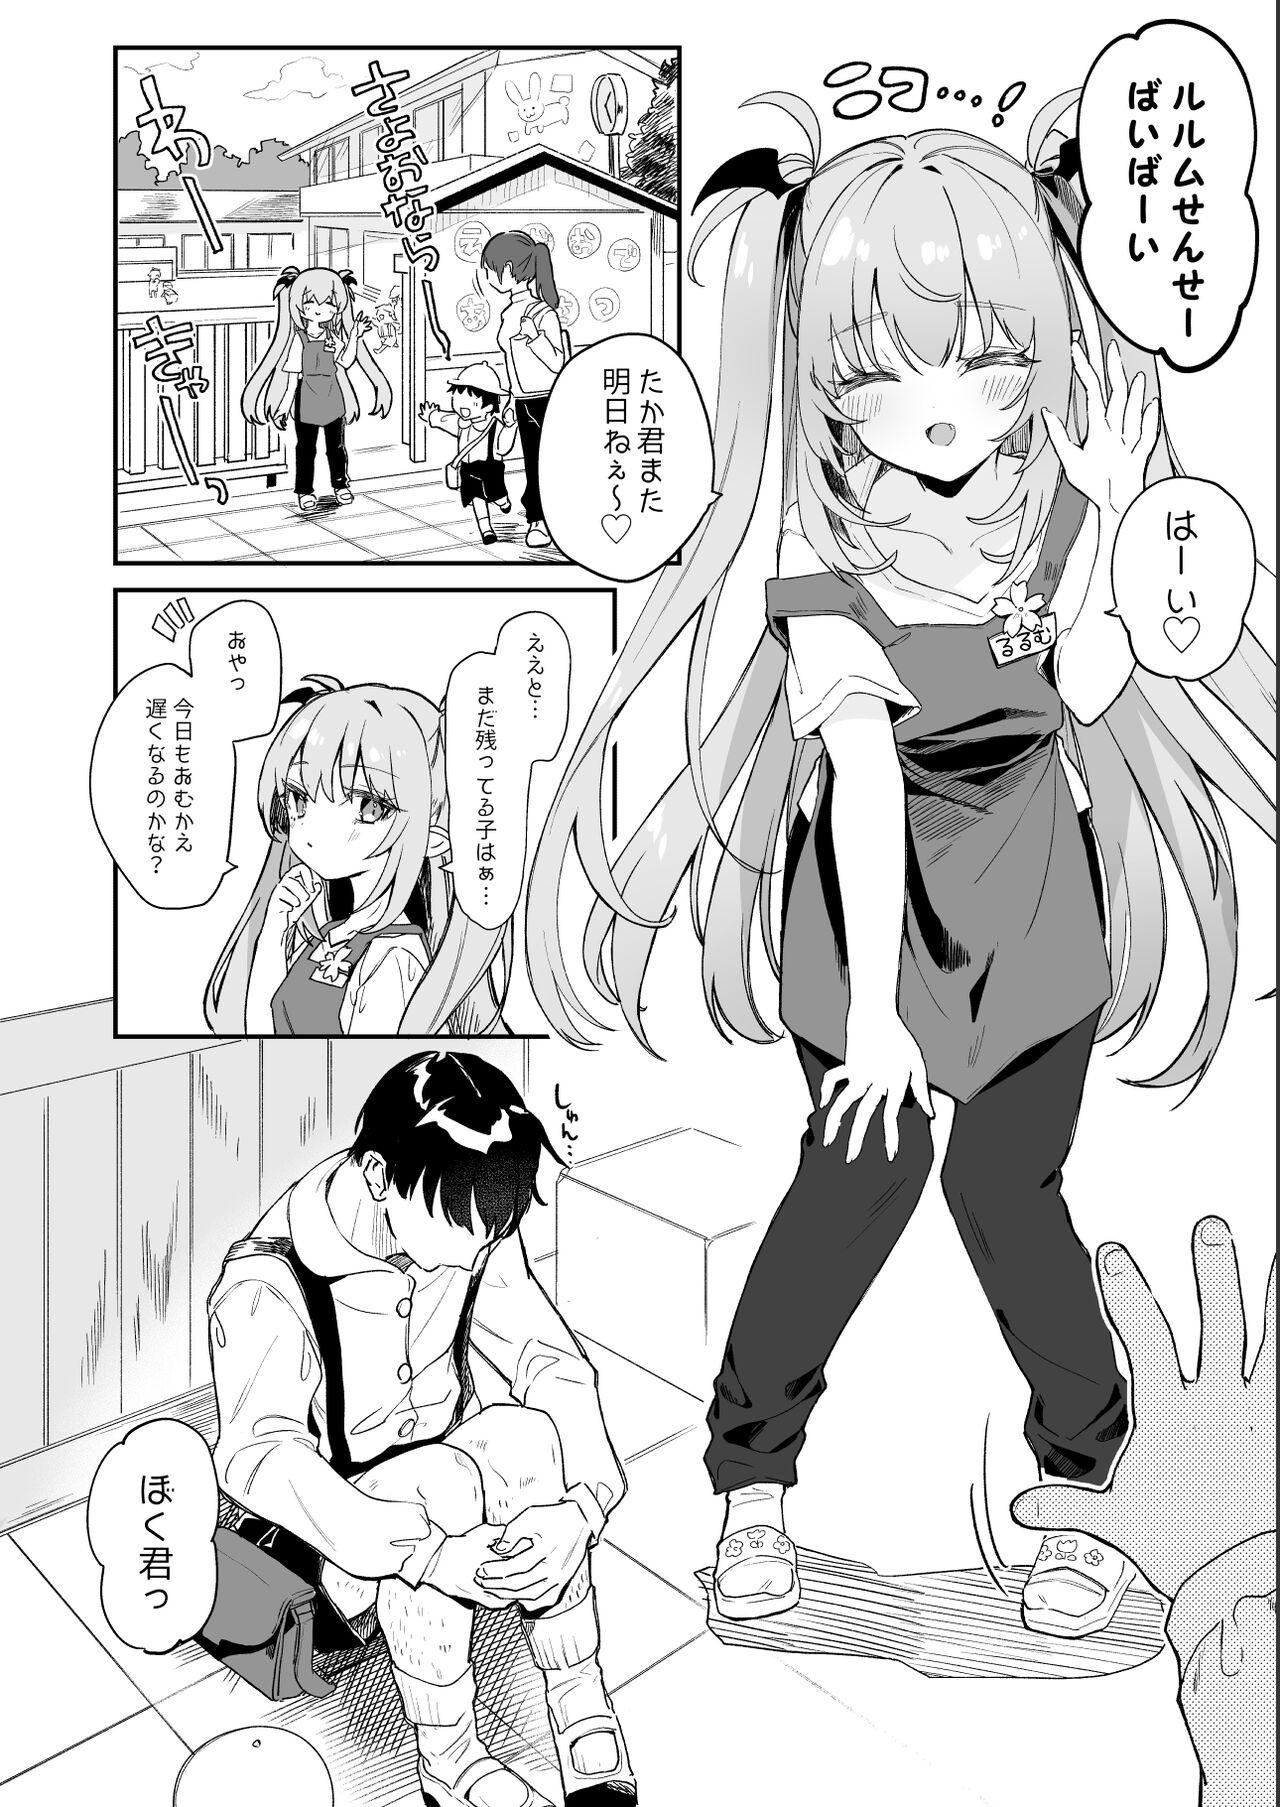 Gozada [Tamano Kedama] Kodomo no Hi (Imishin) ni Mukete Manga o Kaku - Original Gagging - Page 4